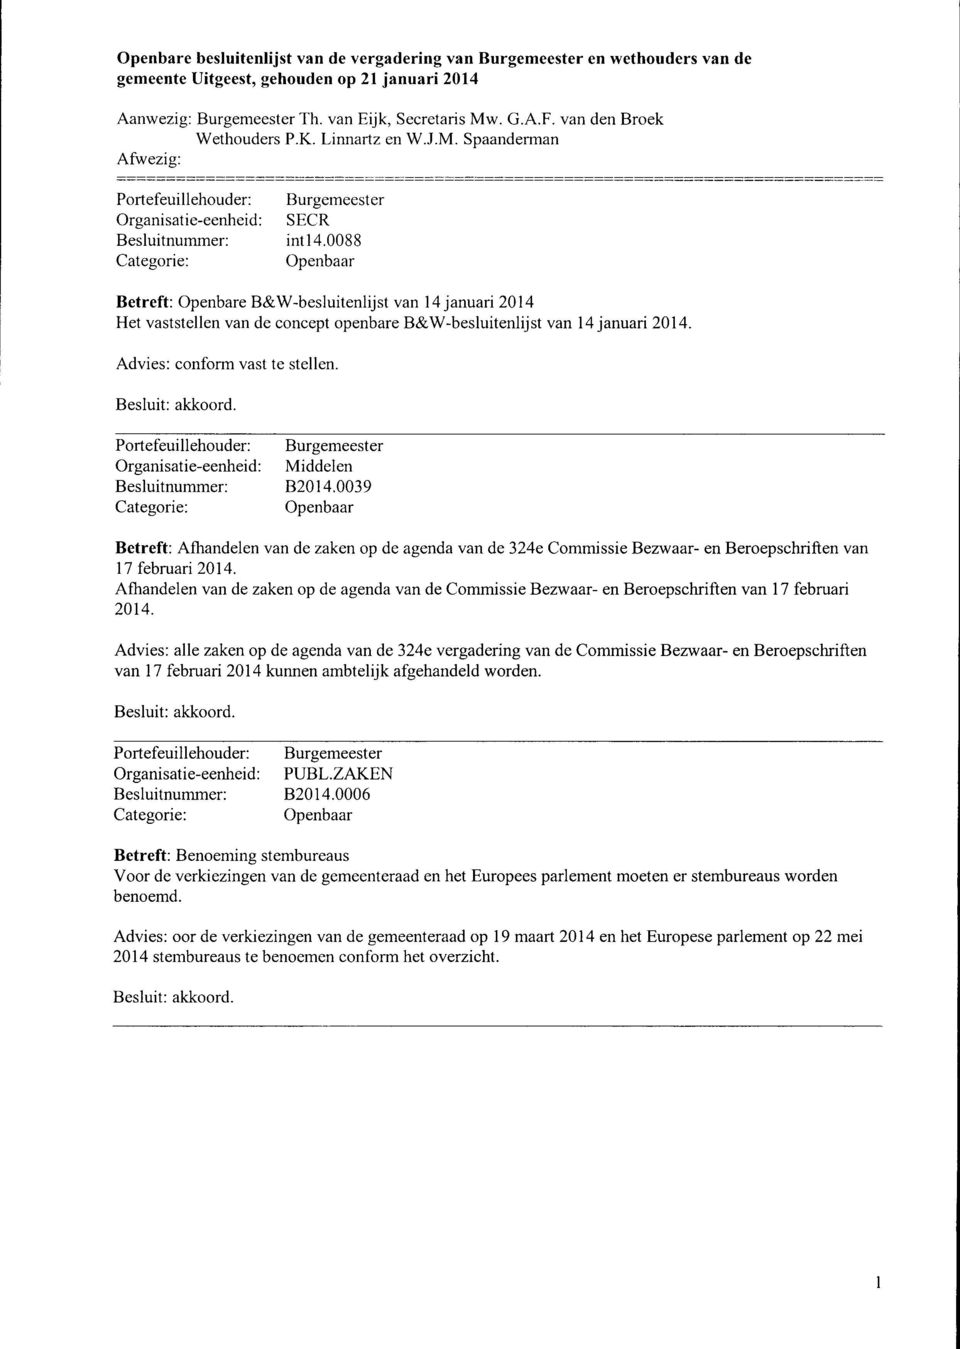 Organisatie-eenheid: Middelen Besluitnummer: B2014.0039 Betreft: Afhandelen van de zaken op de agenda van de 324e Commissie Bezwaar- en Beroepschriften van 17 februari 2014.